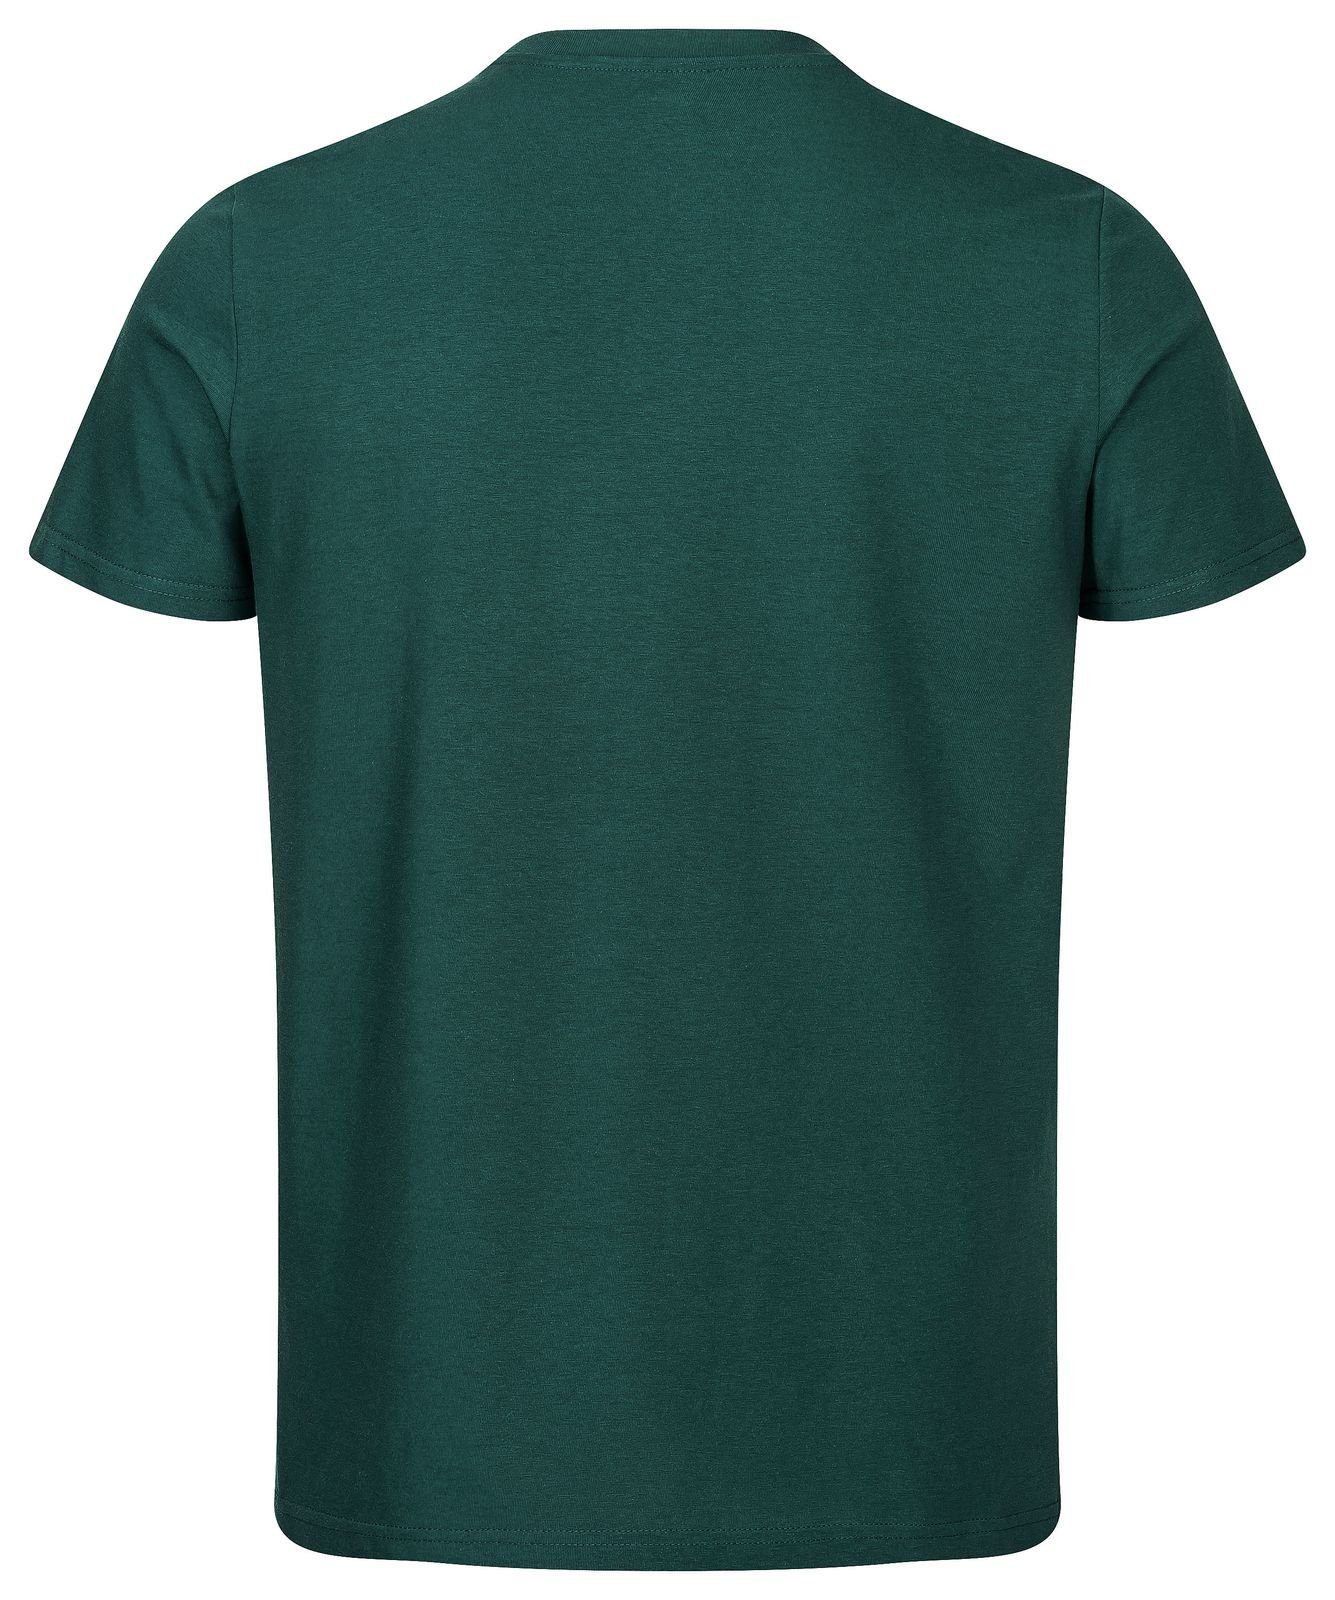 Gradnetz T-Shirt basic nachhaltig dunkelgrün 100% unisex fair leather & Biobaumwolle